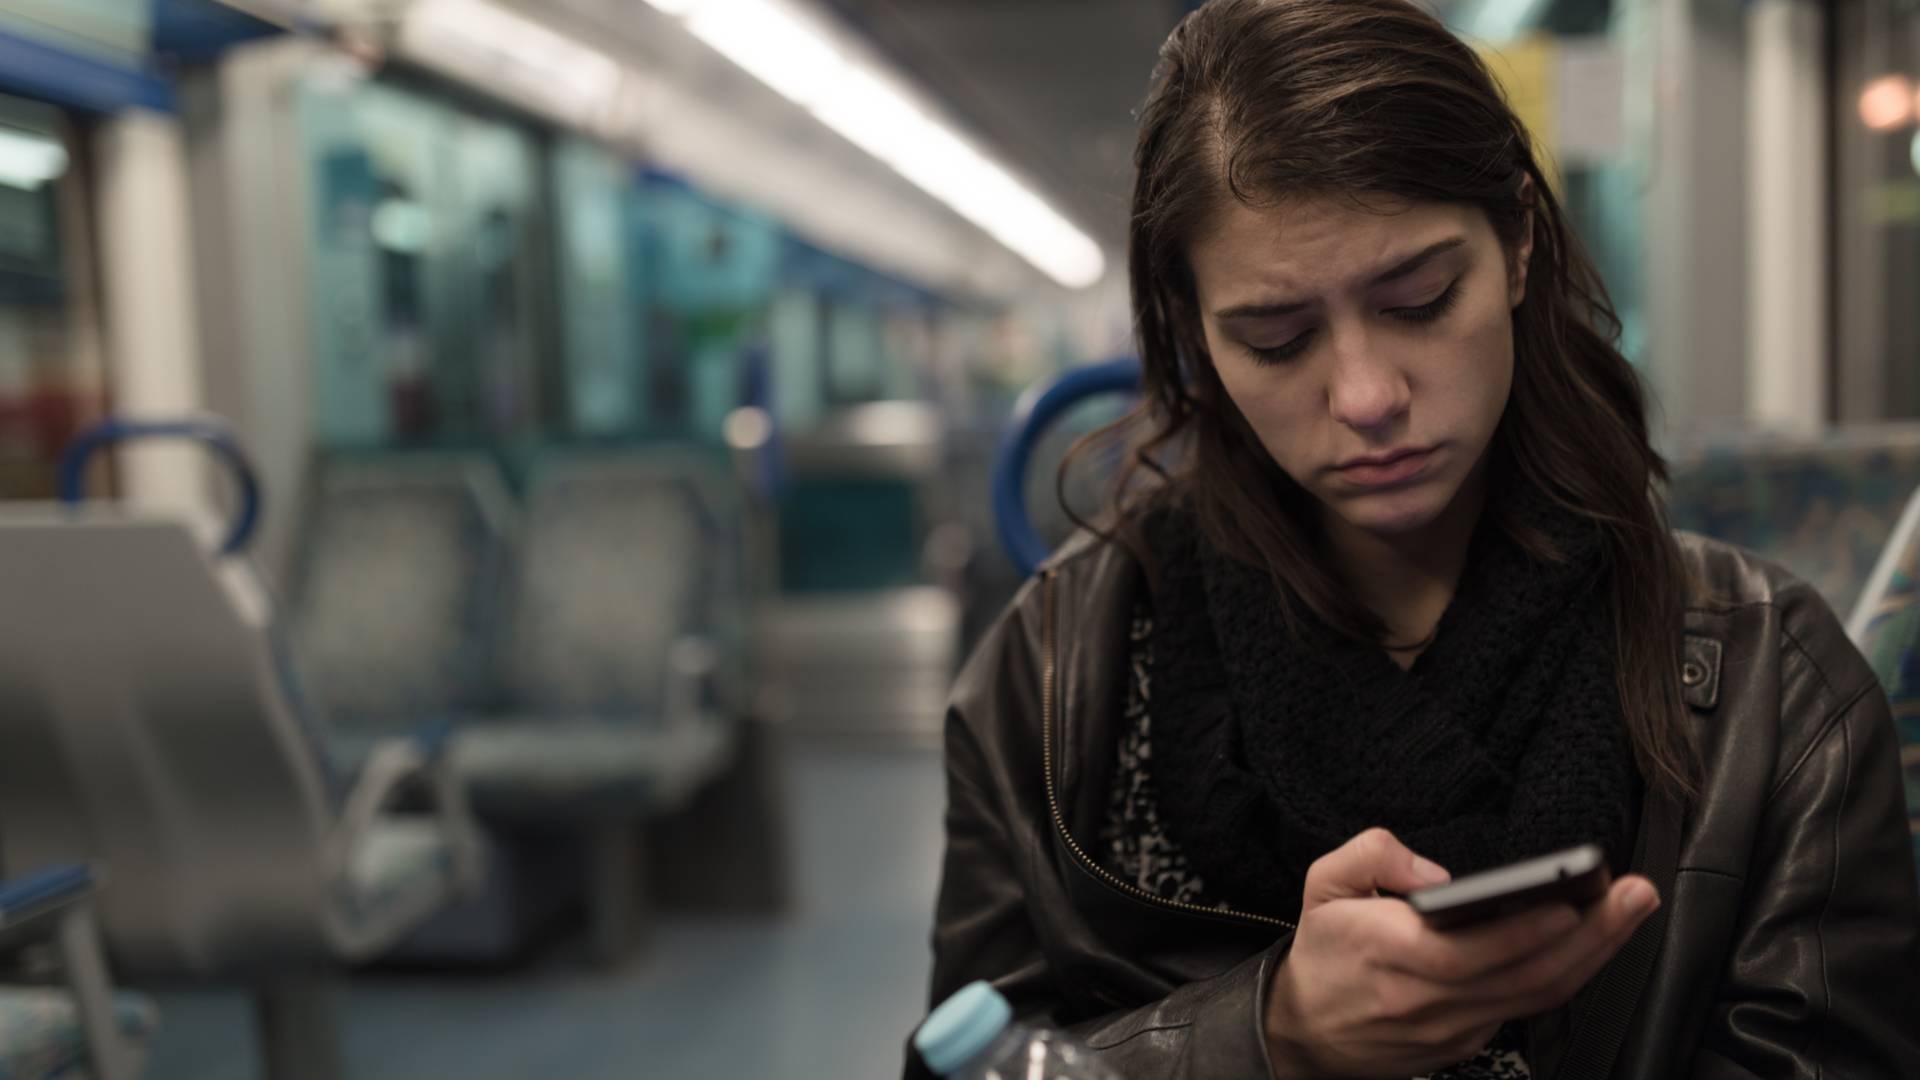 Megdőlni látszik az elmélet, hogy az Instagram és a TikTok okozza a fiatalok depresszióját